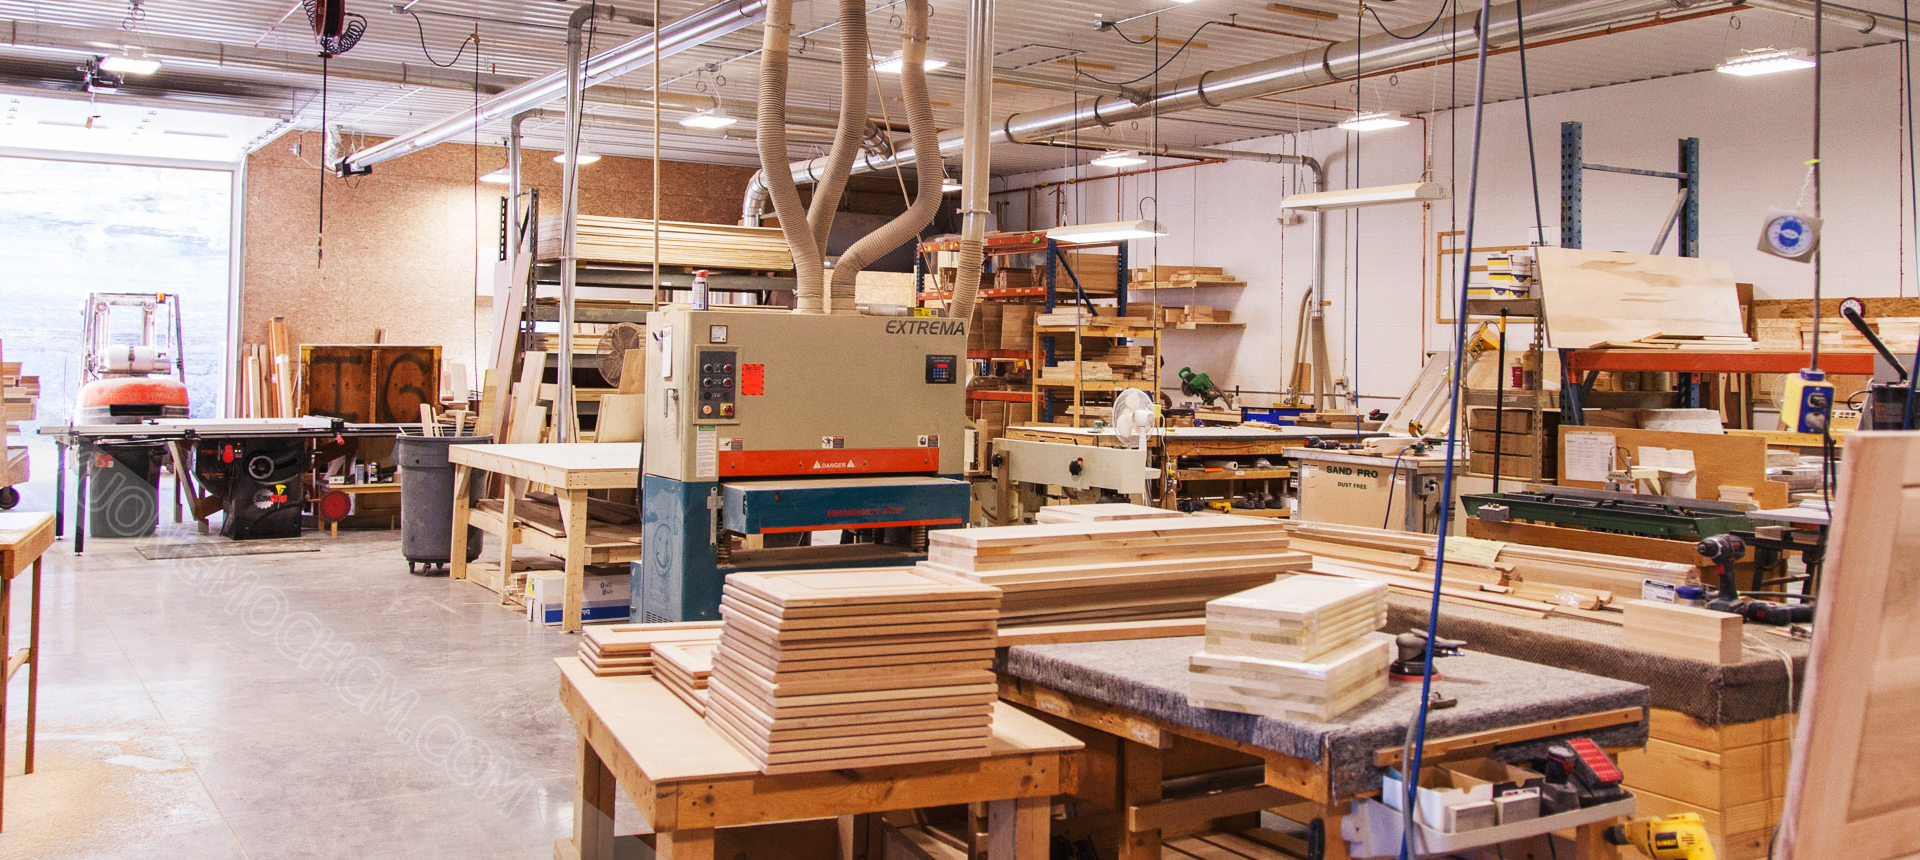 Với hai xưởng gỗ quy mô lớn thuộc Hà Nội chúng tôi cung cấp tơi cho bạn những sản phẩm nội thất chất lượng cao, đa dạng về mẫu mã và giá thành cạnh tranh cao.